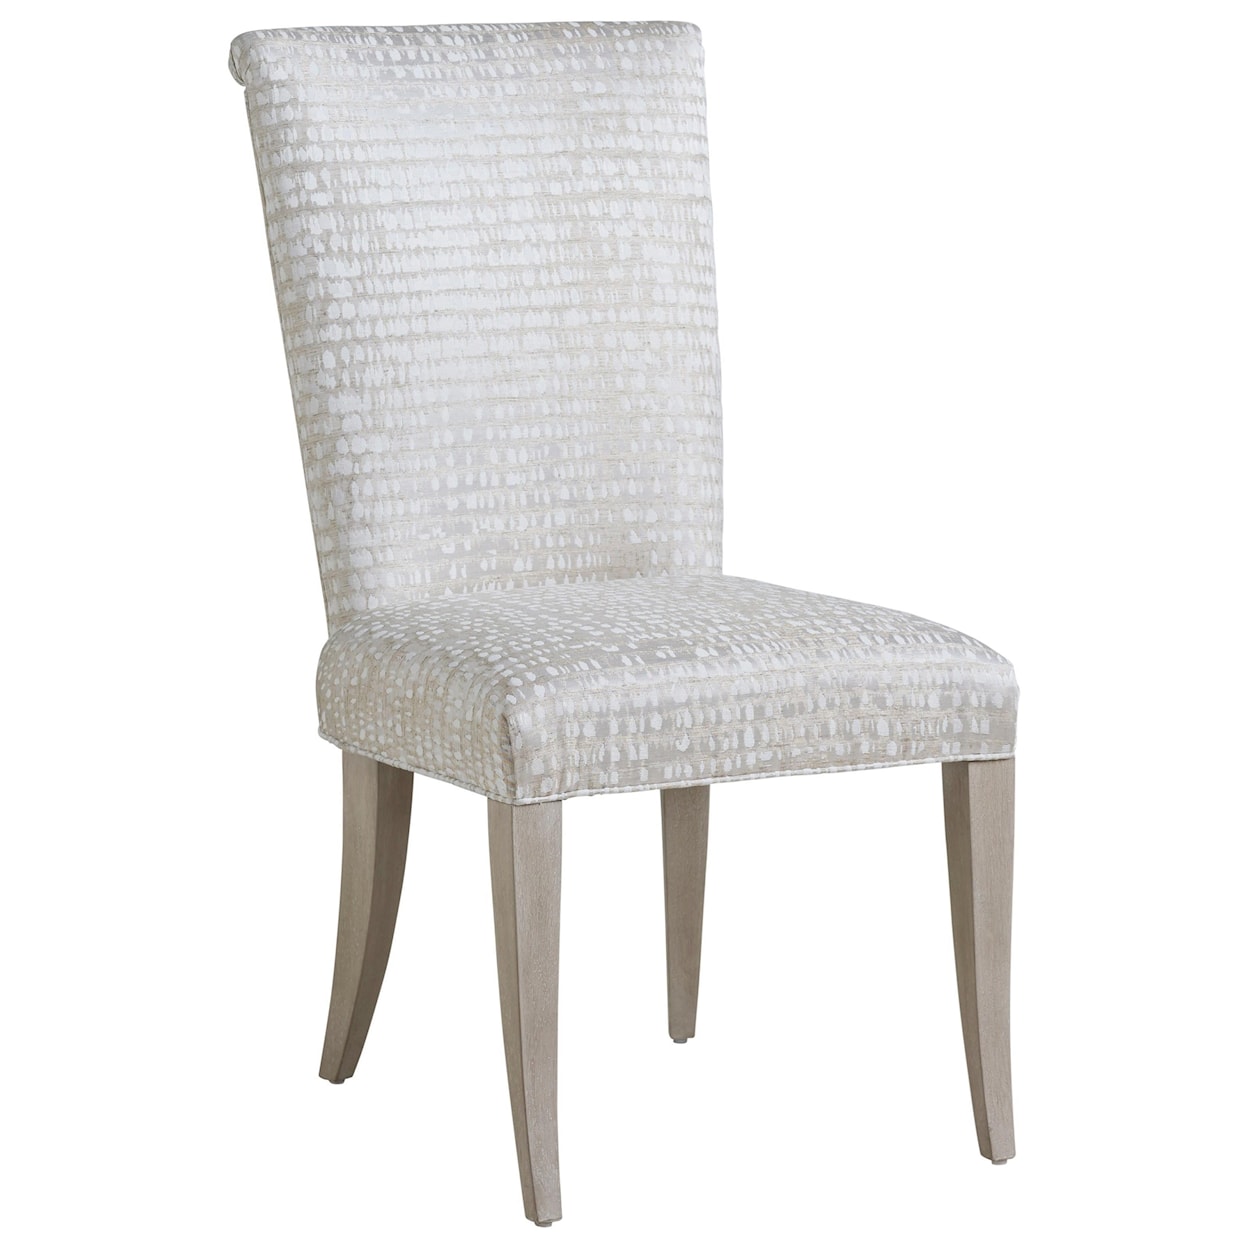 Barclay Butera Malibu Serra Upholstered Side Chair